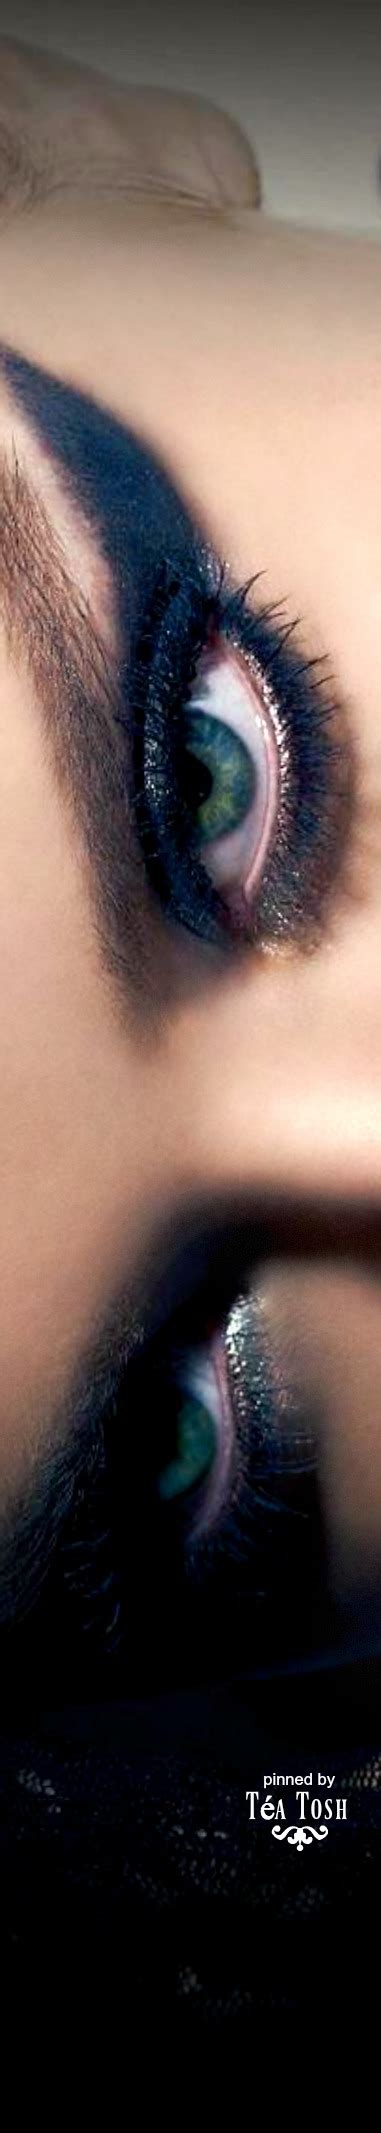 téa tosh perfect eyebrows gorgeous eyes glamorous makeup